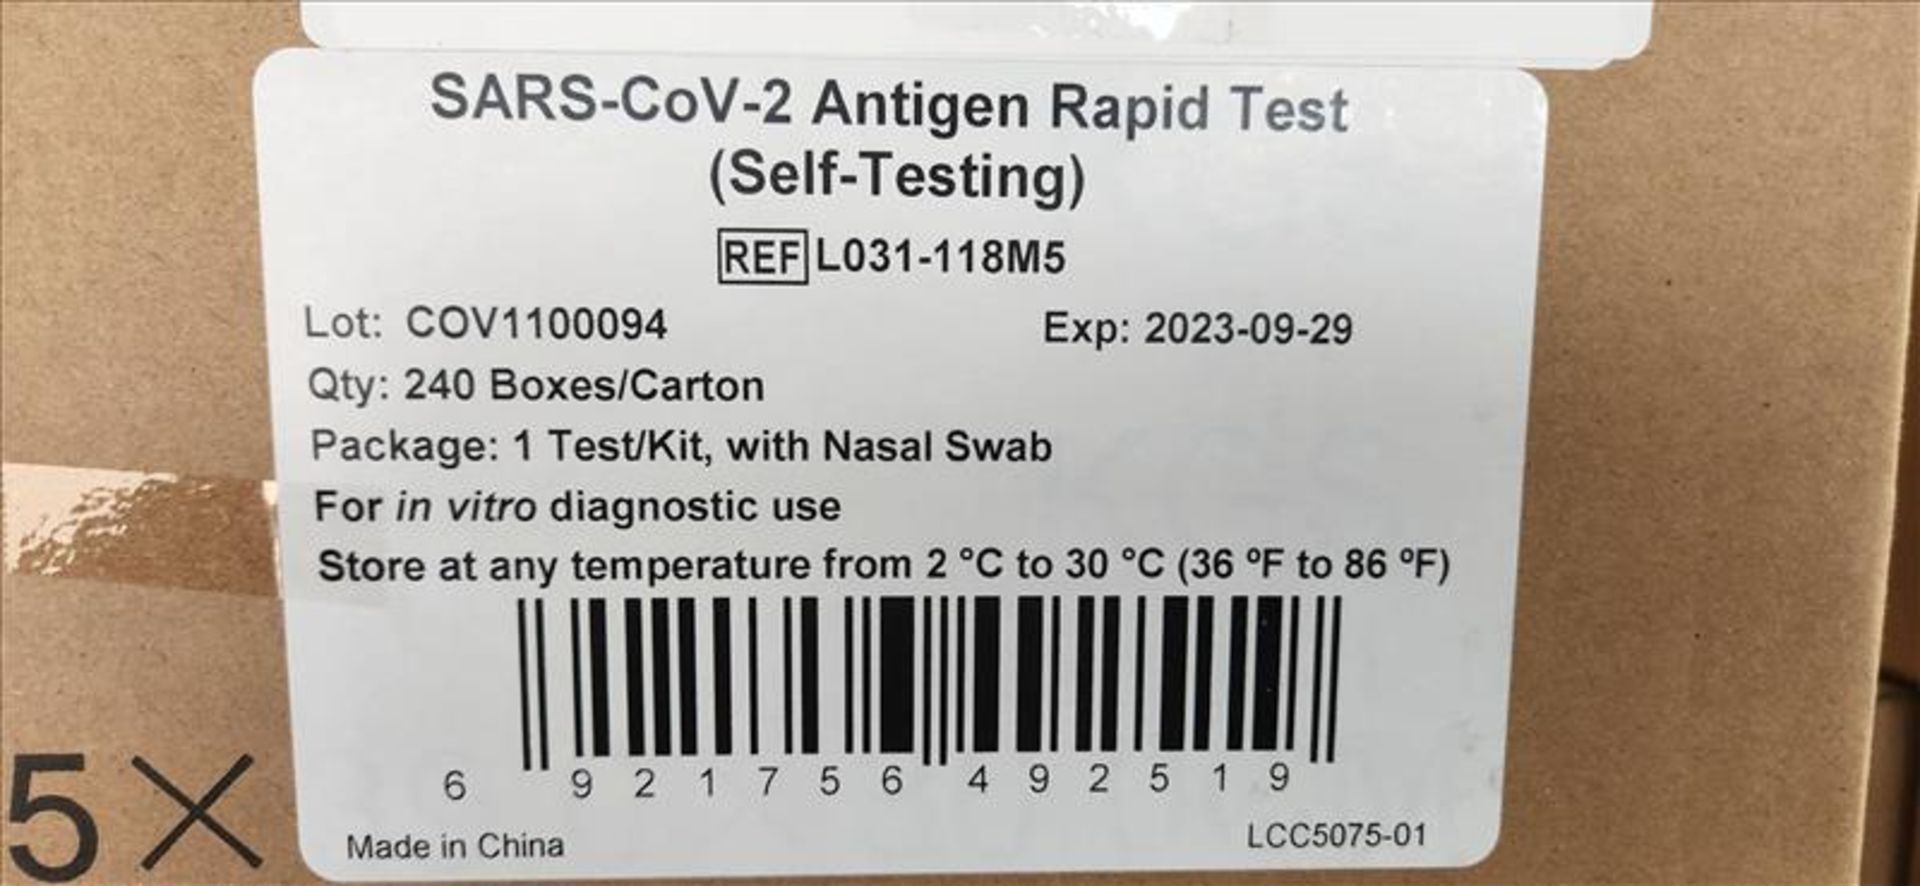 (85) Sars-CoV-2 Antigen Rapid Tests, 240 pcs per box - Image 2 of 2